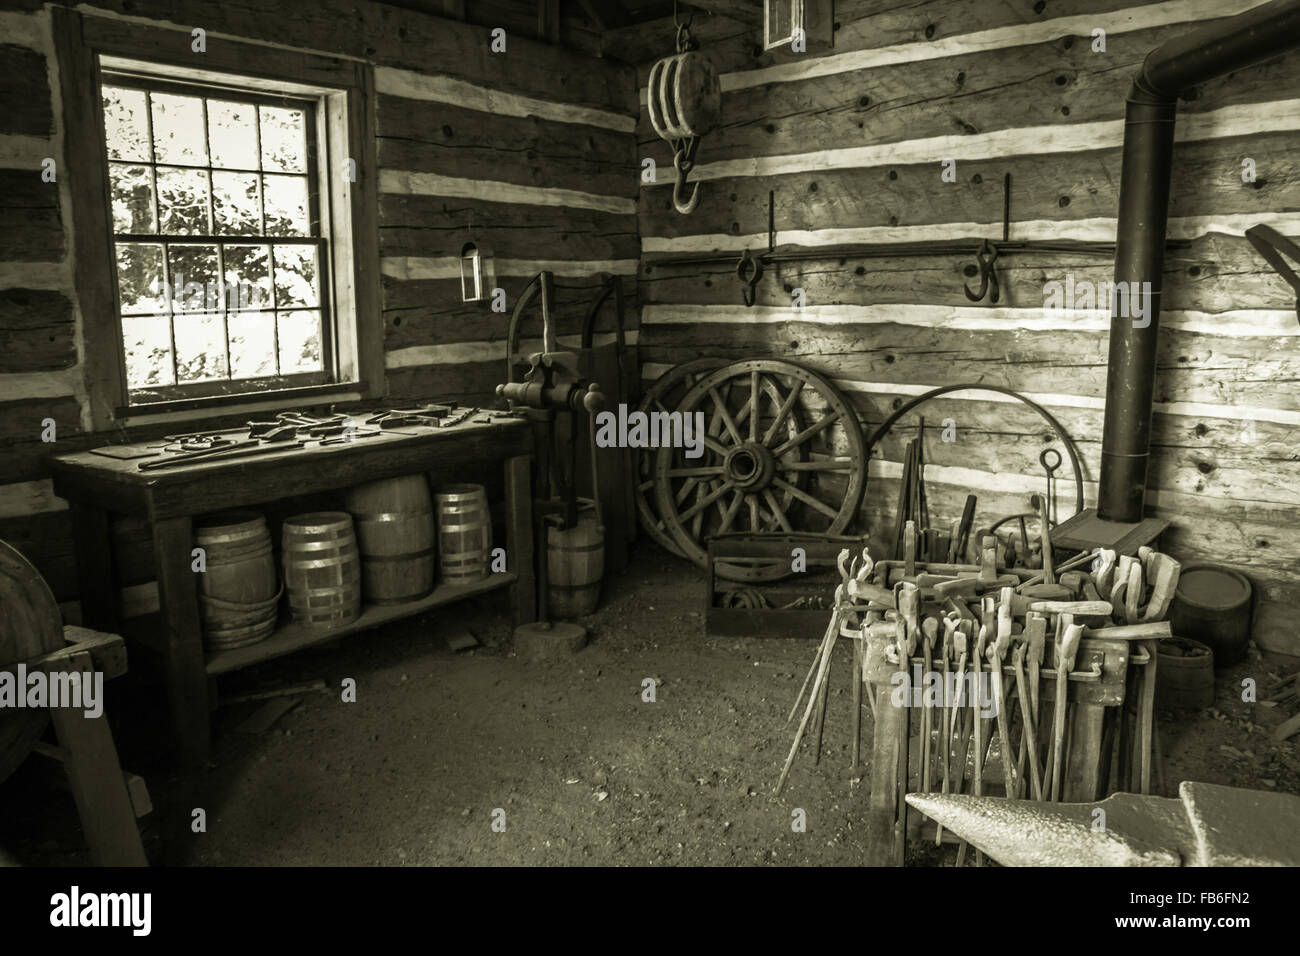 Vintage Blacksmith Shop. Interieur der historischen Schmiede in schwarz und weiß. Stockfoto